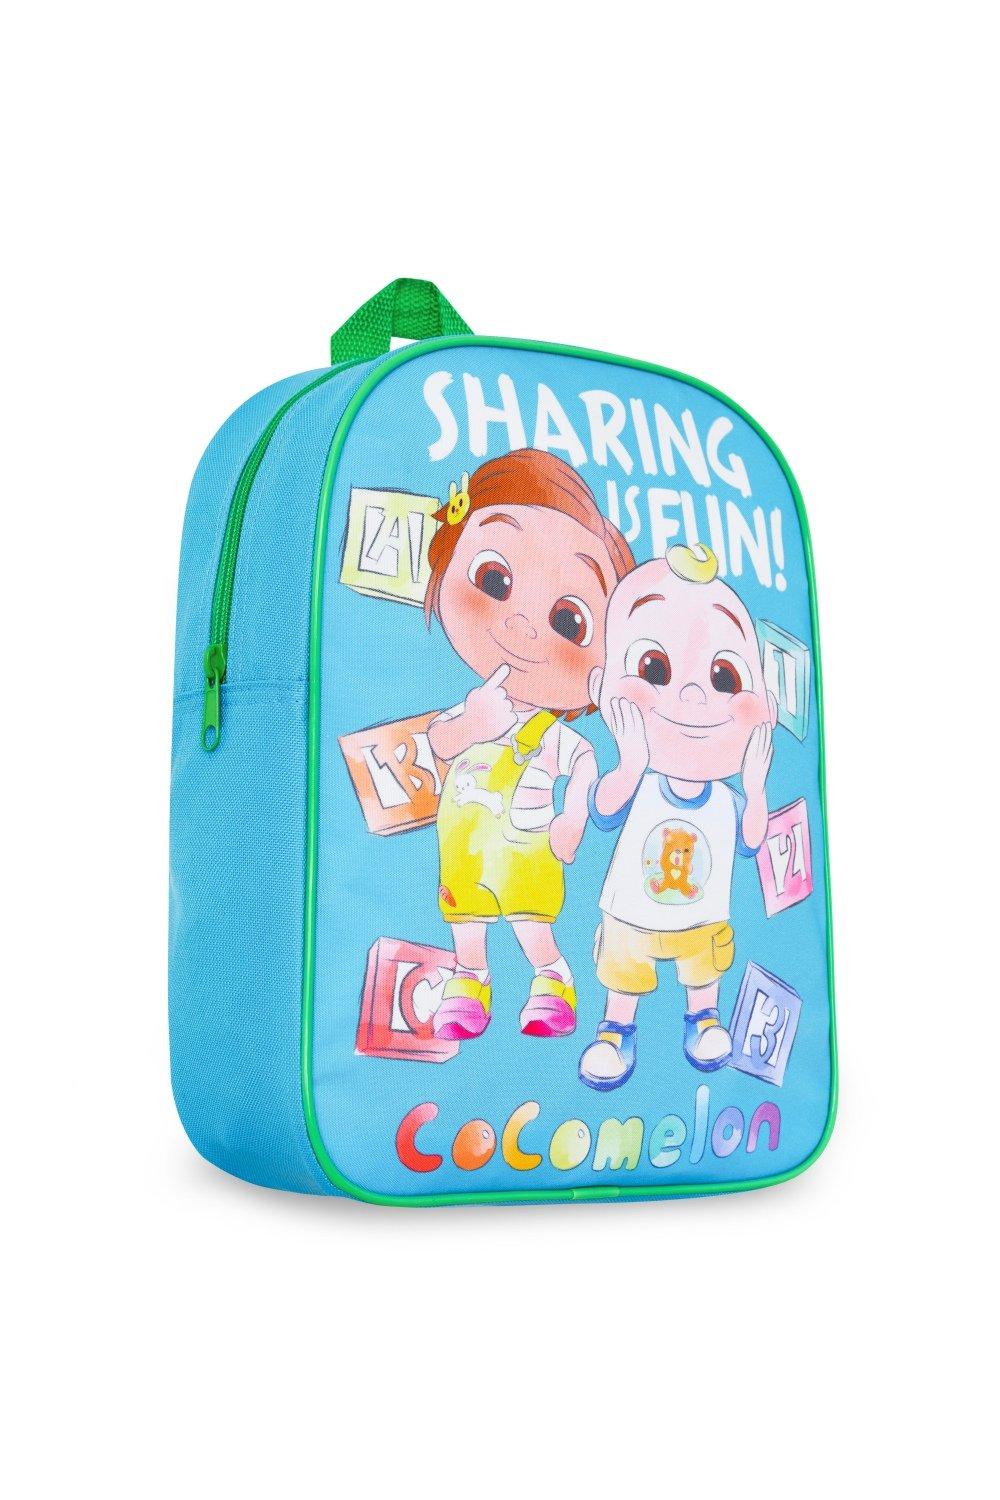 Графический рюкзак 30 x 24 x 9 см Cocomelon, мультиколор рюкзак для девочек и мальчиков 2 6 лет школьный ранец с милым кроликом и динозавром для детского сада